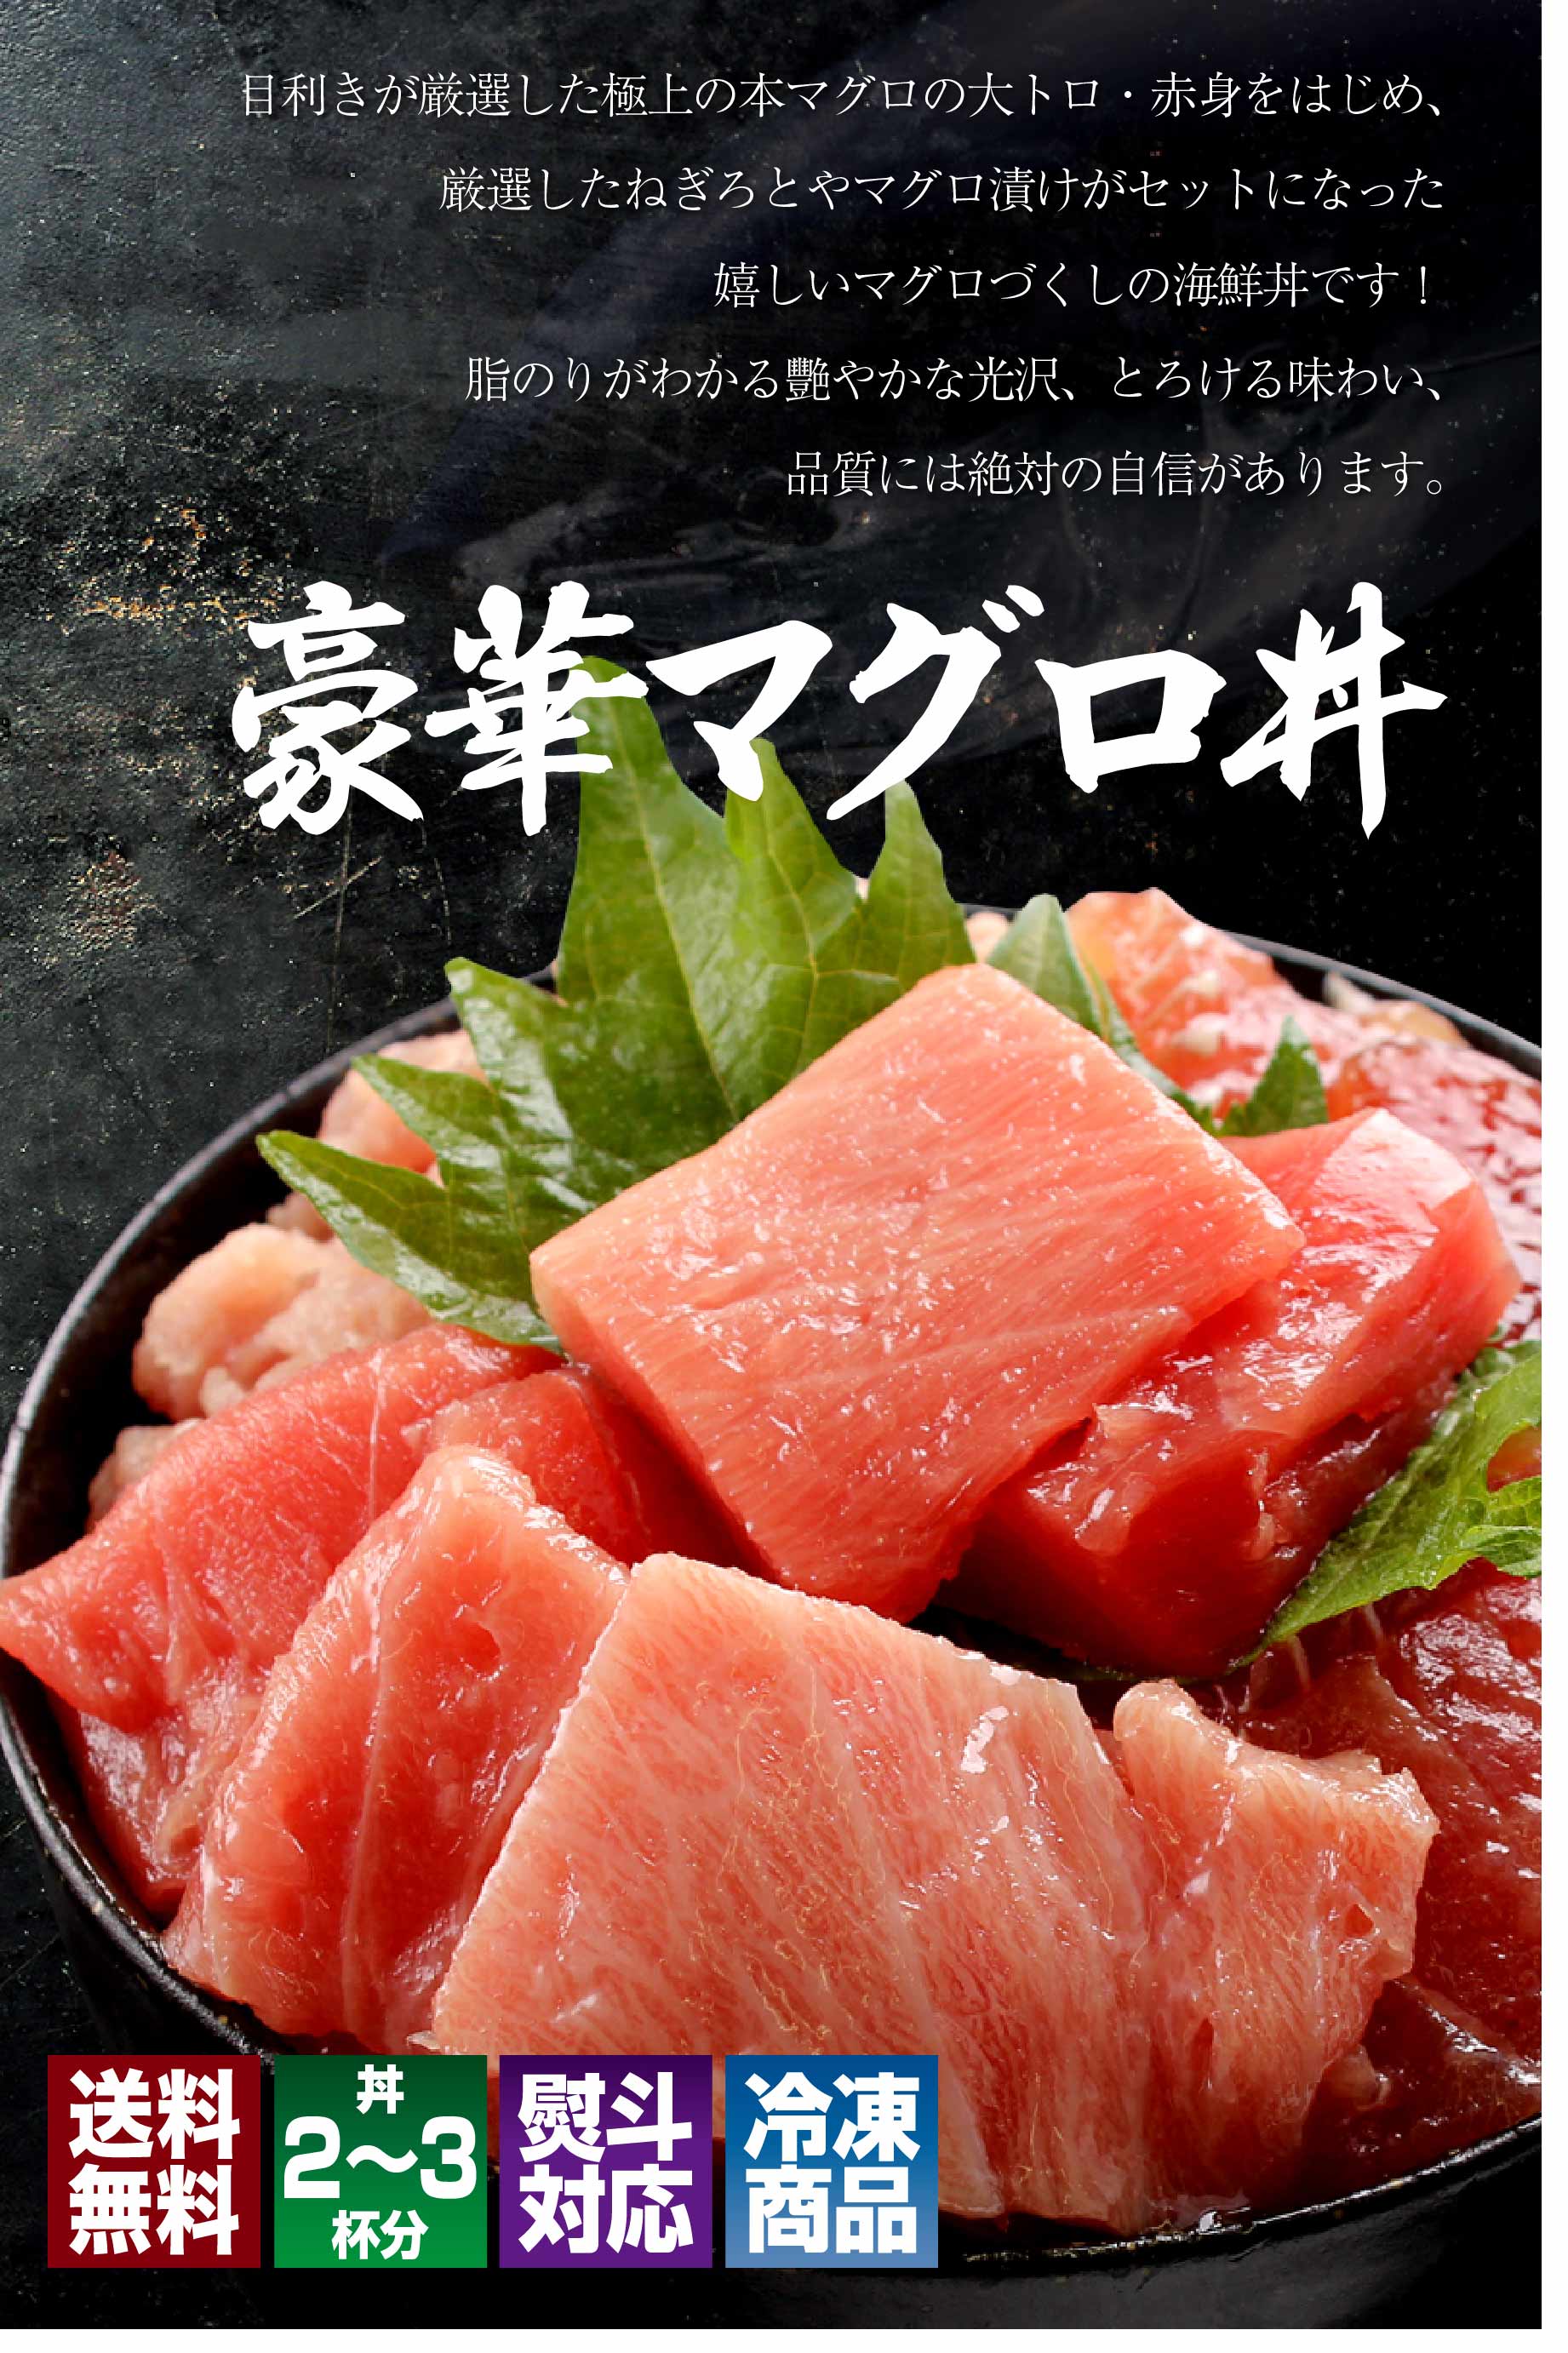 豪華マグロ丼 | マグロの吉井 | マグロ屋 吉井の海鮮丼 お取り寄せ通販